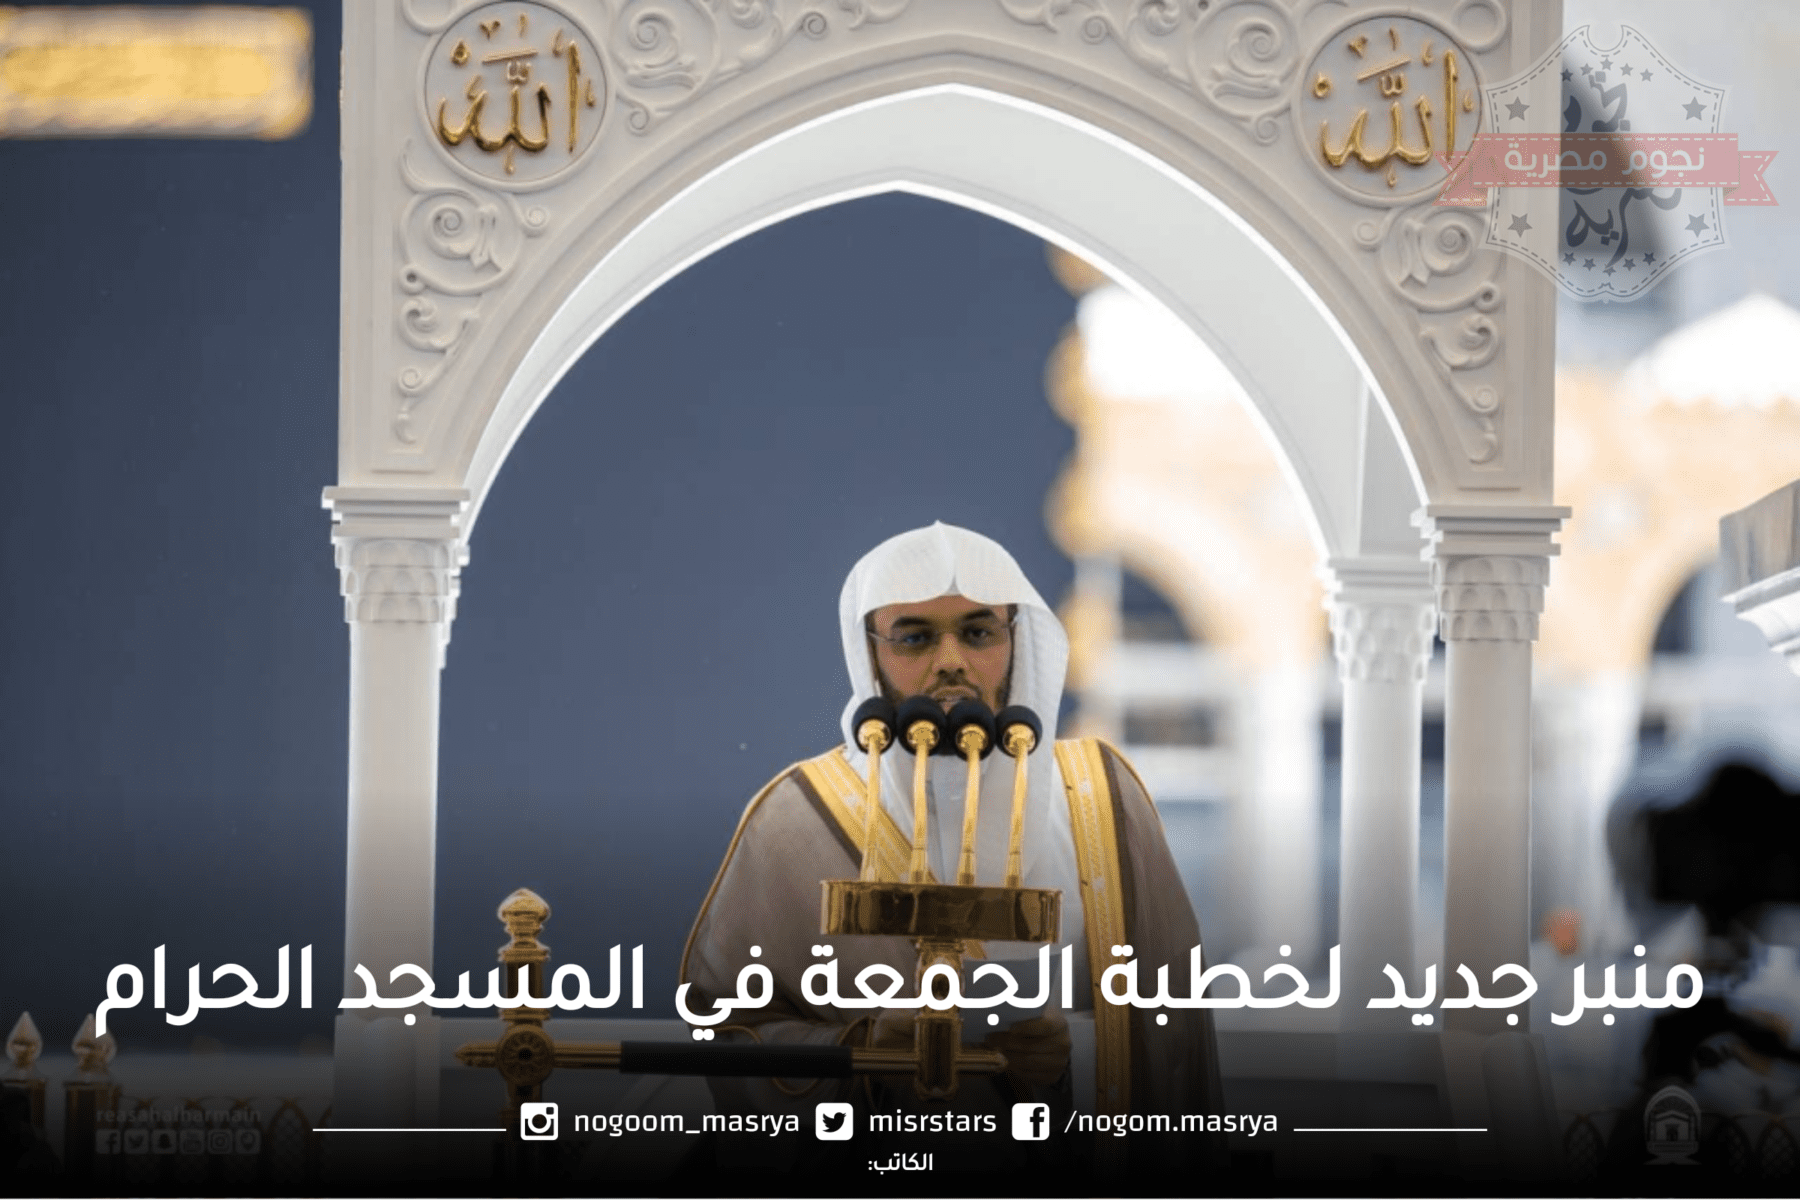 منبر جديد لخطبة الجمعة في المسجد الحرام